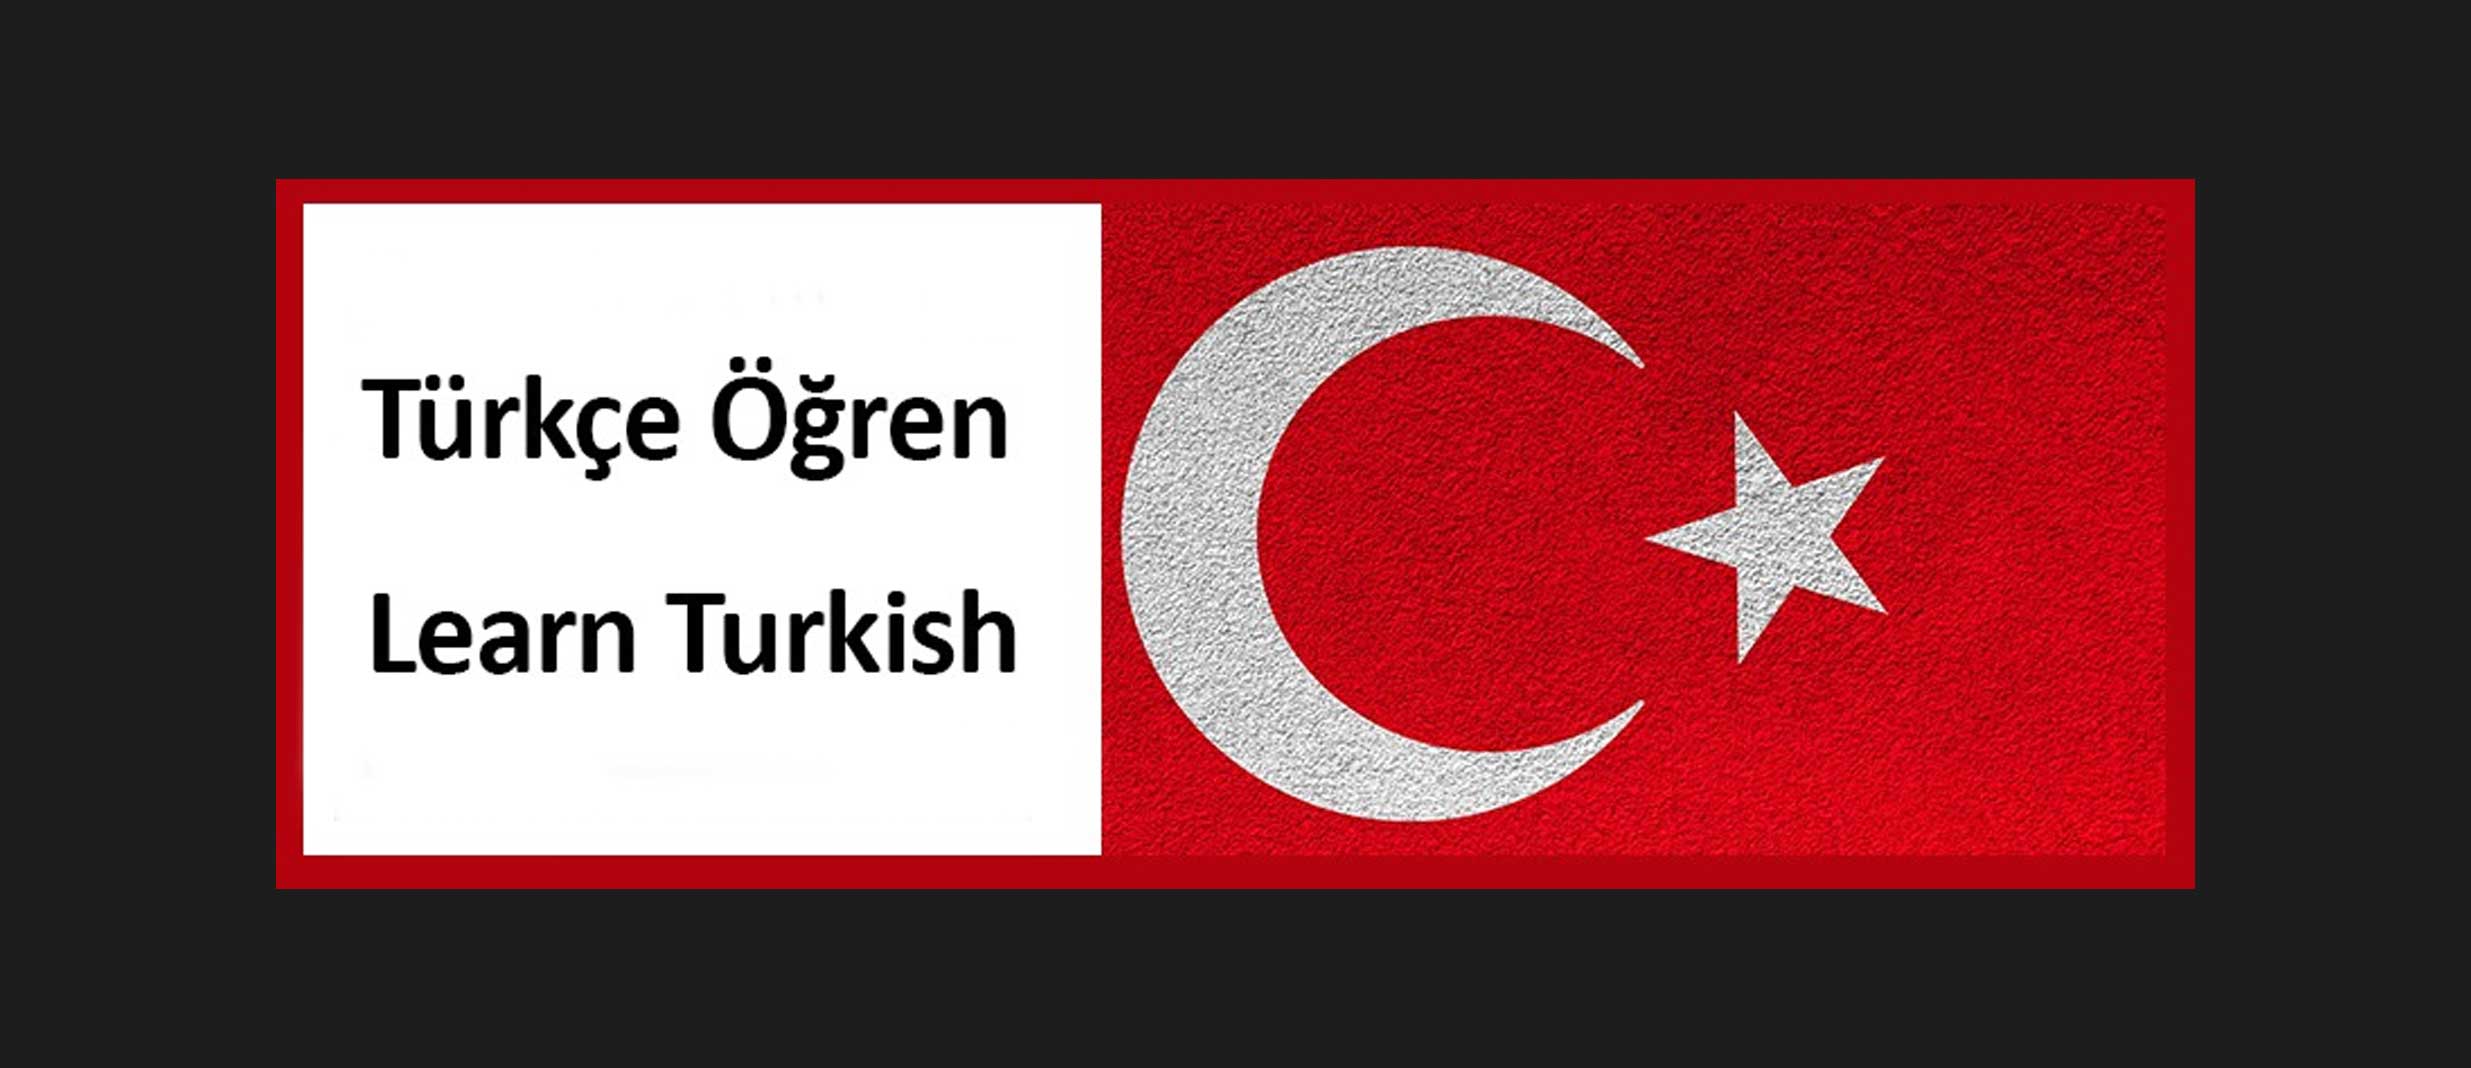 Learn Turkish – Türkçe Öğren